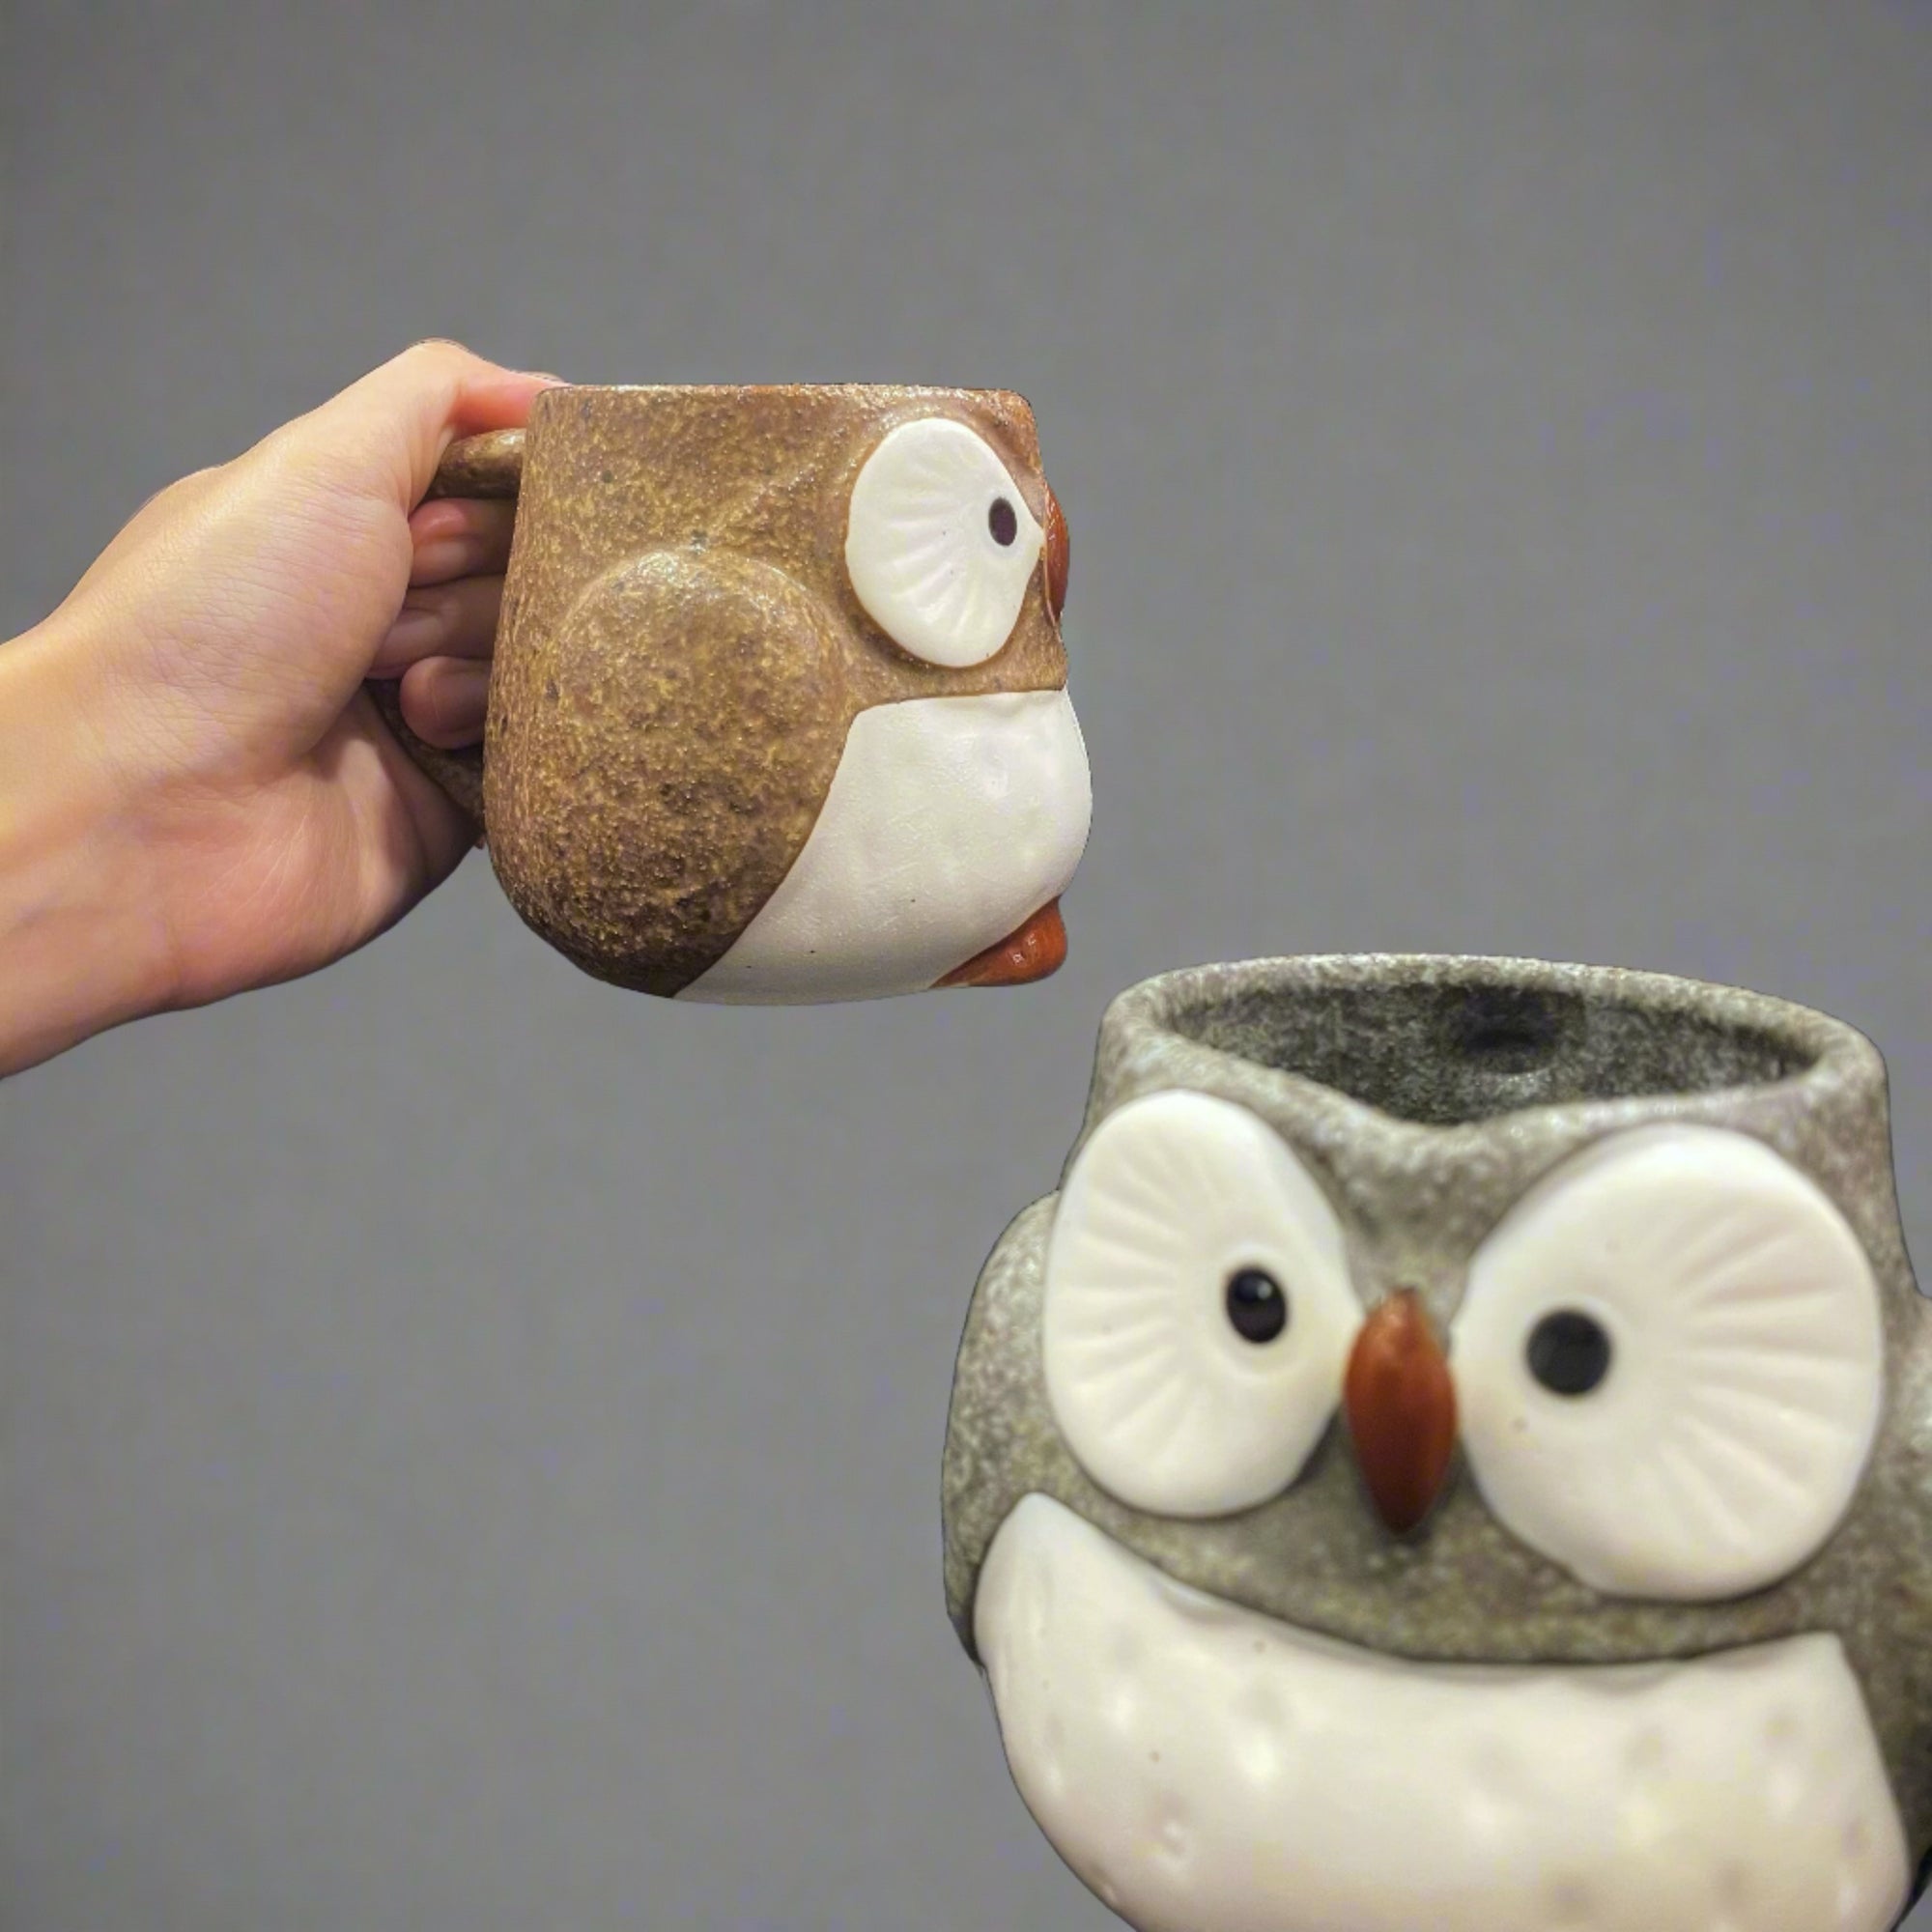 Ichiyama Owl Mug Pair Set